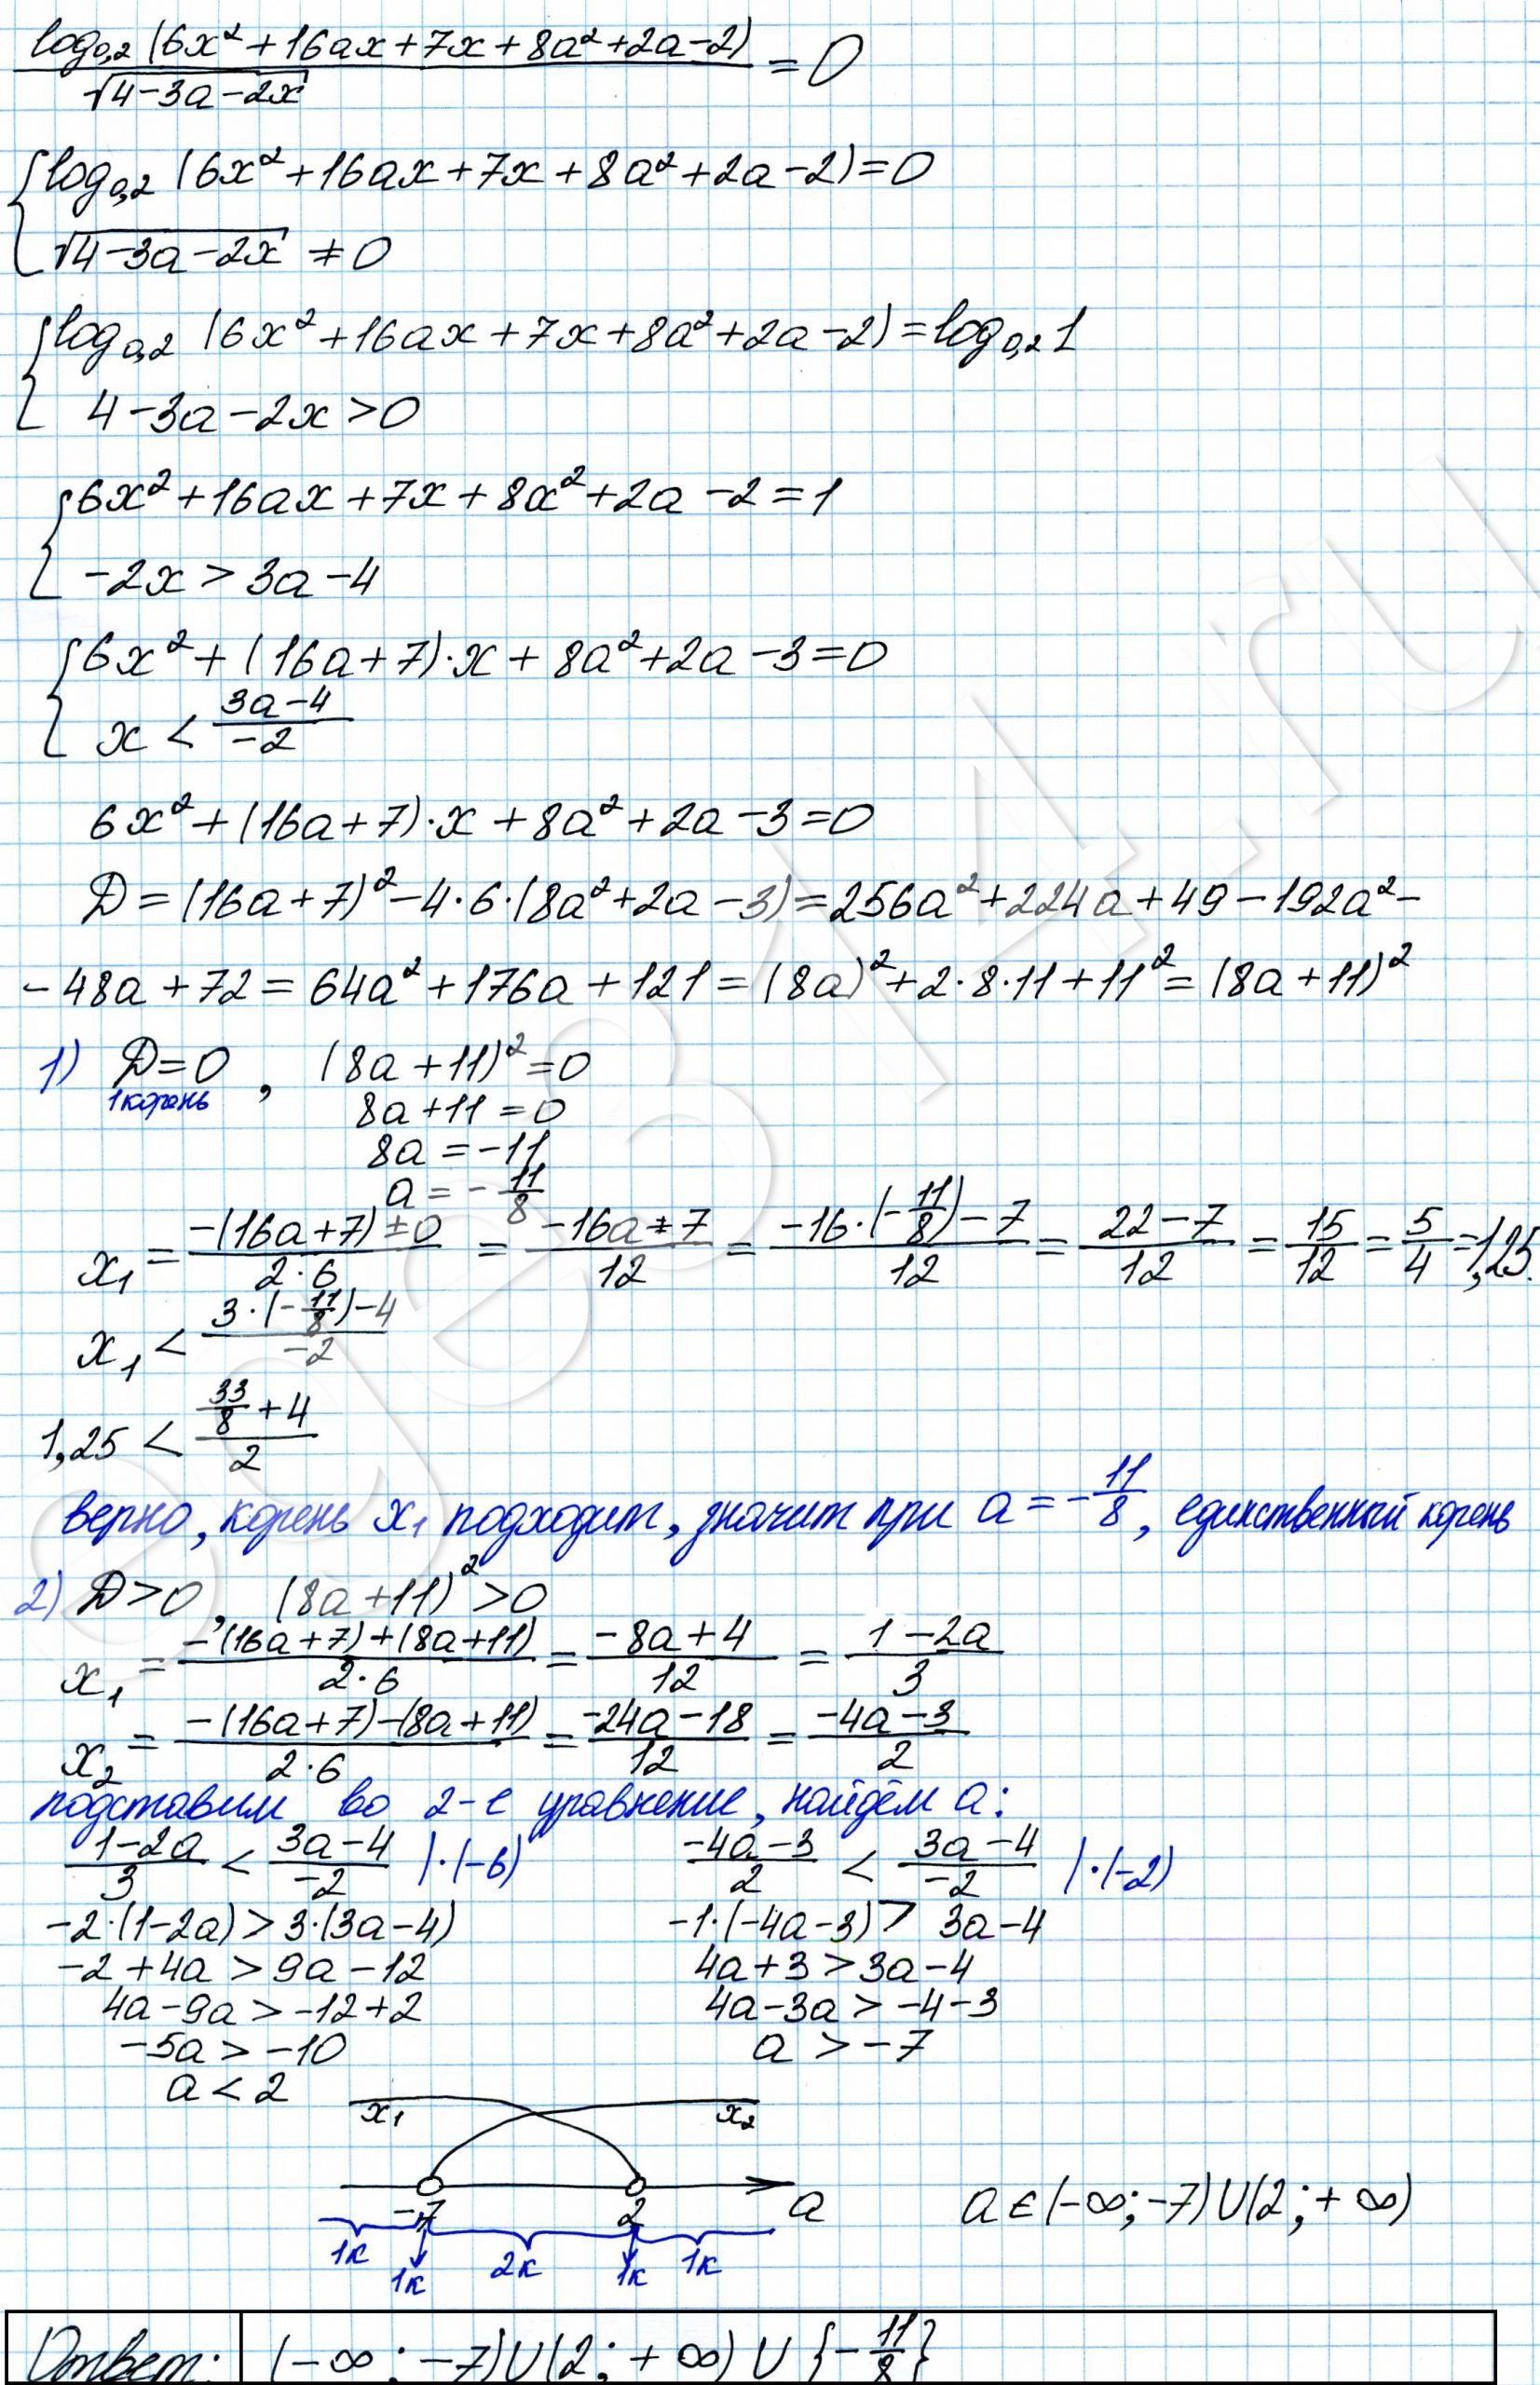 Найдите все значения a, при каждом из которых уравнение log 0,2(6x^2+16ax +7x+8a^2+2a-2)√(4-3a-2x)=0